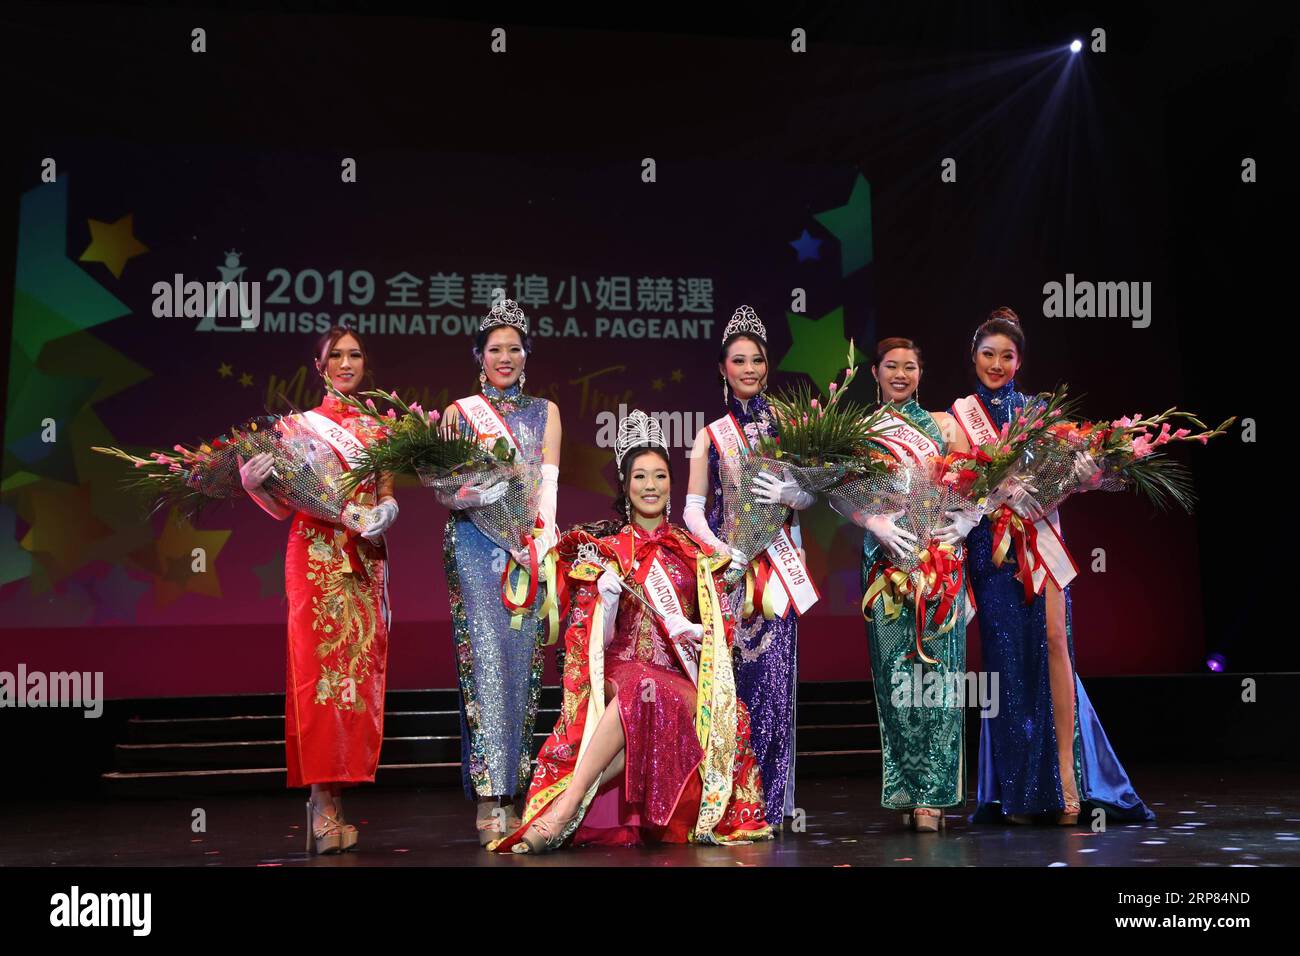 (190217) -- SAN FRANCISCO, 17 febbraio 2019 (Xinhua) -- i vincitori dei premi posano per una foto di gruppo durante la finale del concorso Miss Chinatown U.S.A. 2019 a San Francisco, Stati Uniti, 16 febbraio 2019. Un totale di 12 concorrenti hanno partecipato al concorso finale organizzato dalla camera di commercio cinese di San Francisco. (Xinhua/Liu Yilin) U.S.-SAN FRANCISCO-MISS CHINATOWN U.S.A. CONCORSO -FINAL PUBLICATIONxNOTxINxCHN Foto Stock